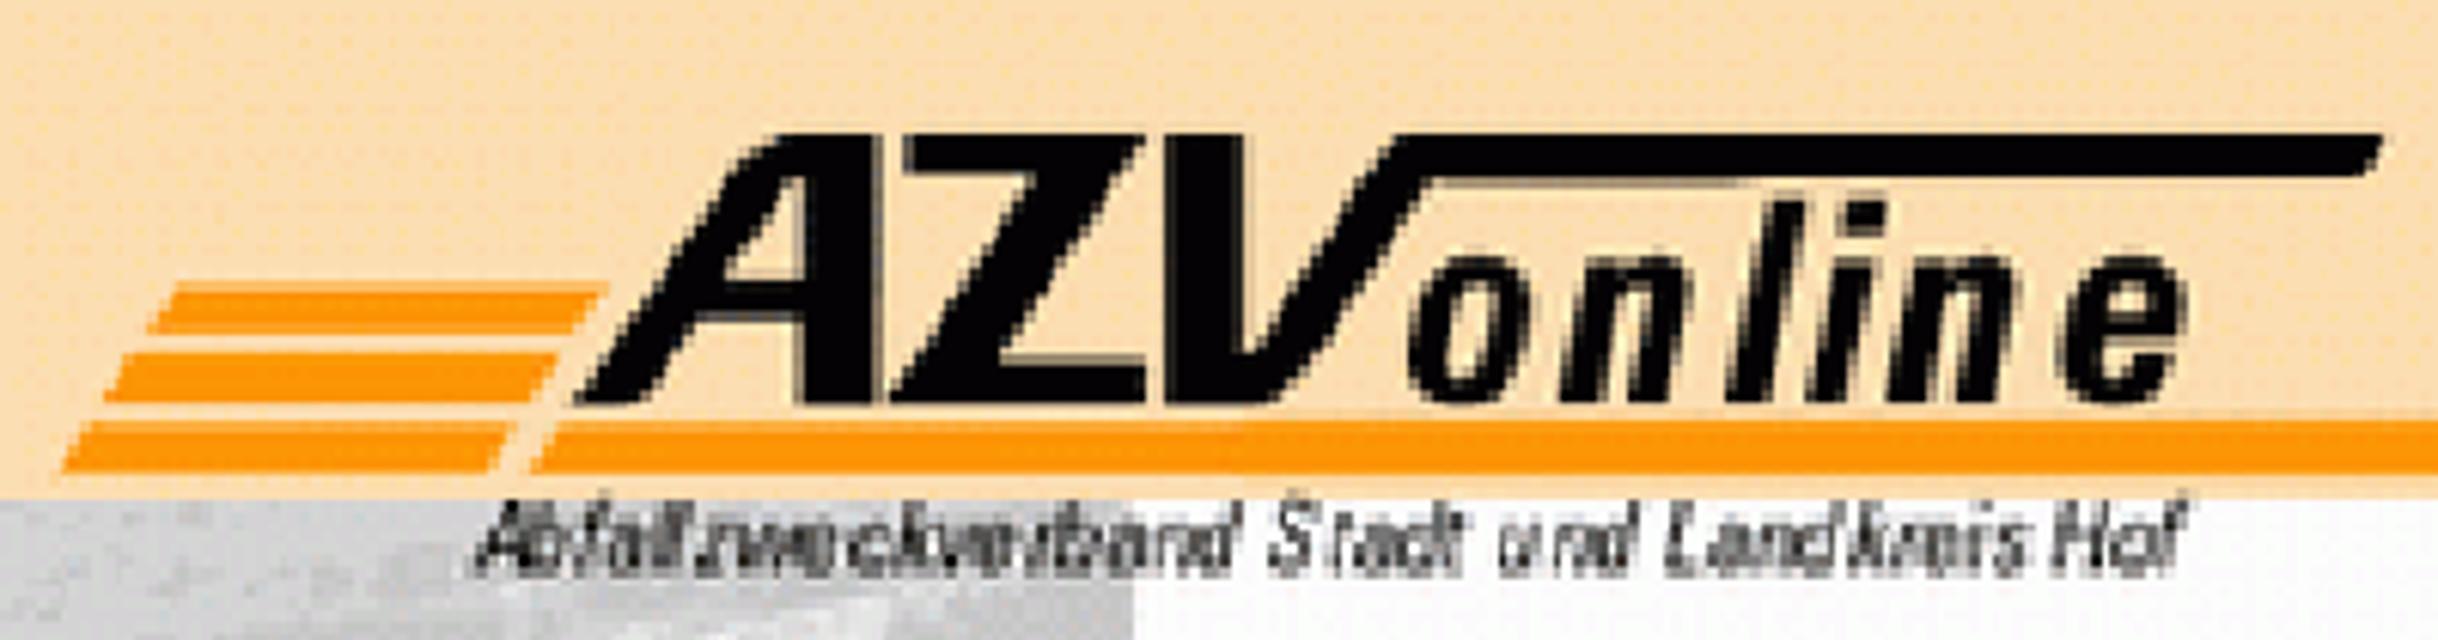 Die Onlinegebrauchtwarenbörse des AZV finden Sie unter:http://www.azv-hof.de/gebrauchtwarenboerse.htm